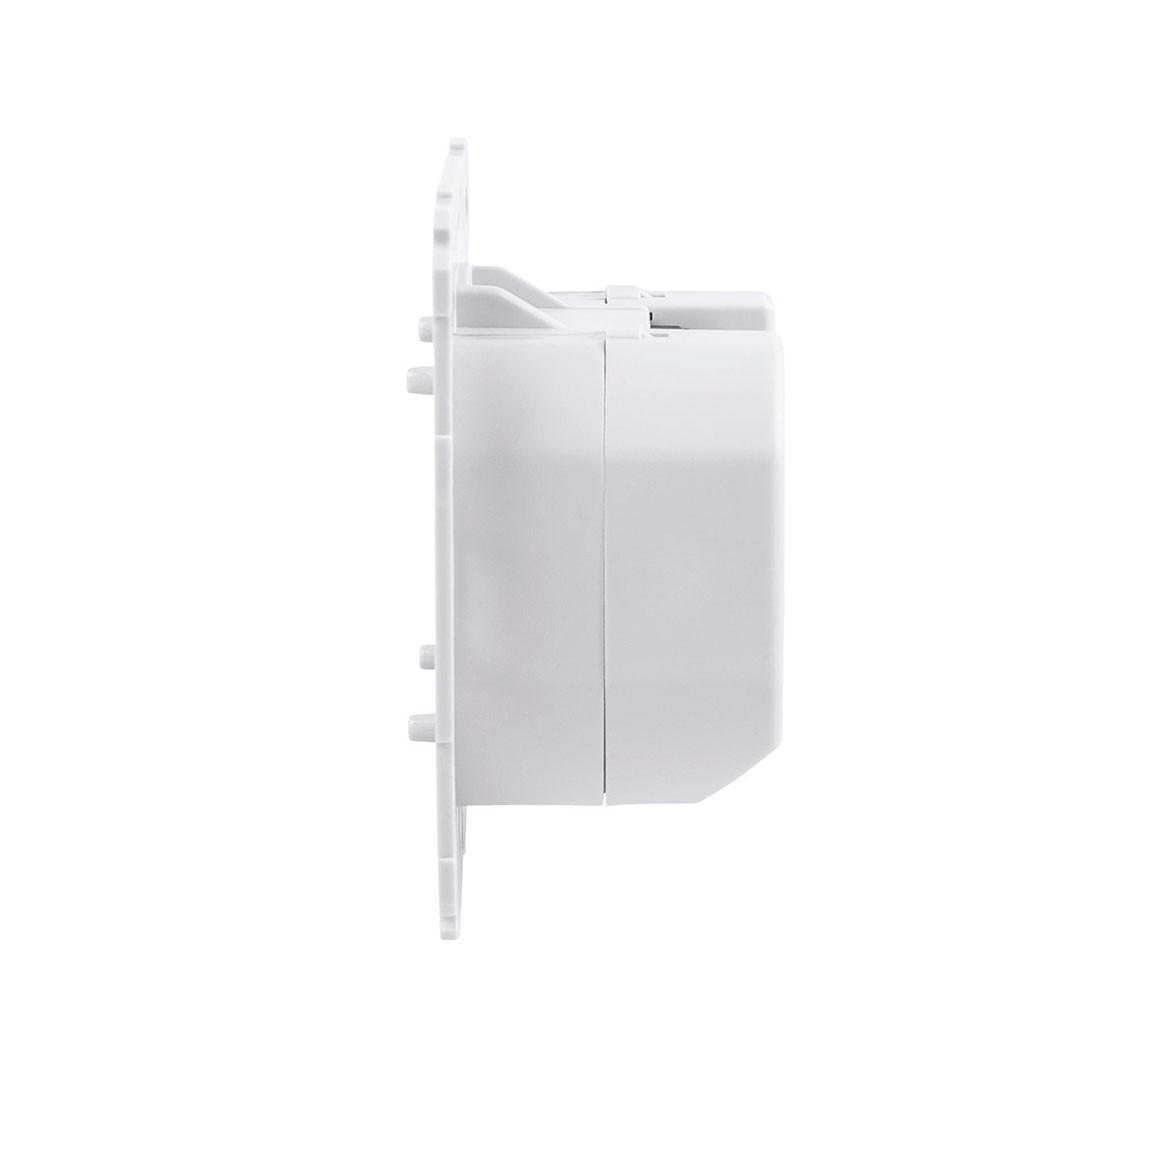 Homematic IP Rollladenaktor für Markenschalter - Weiß